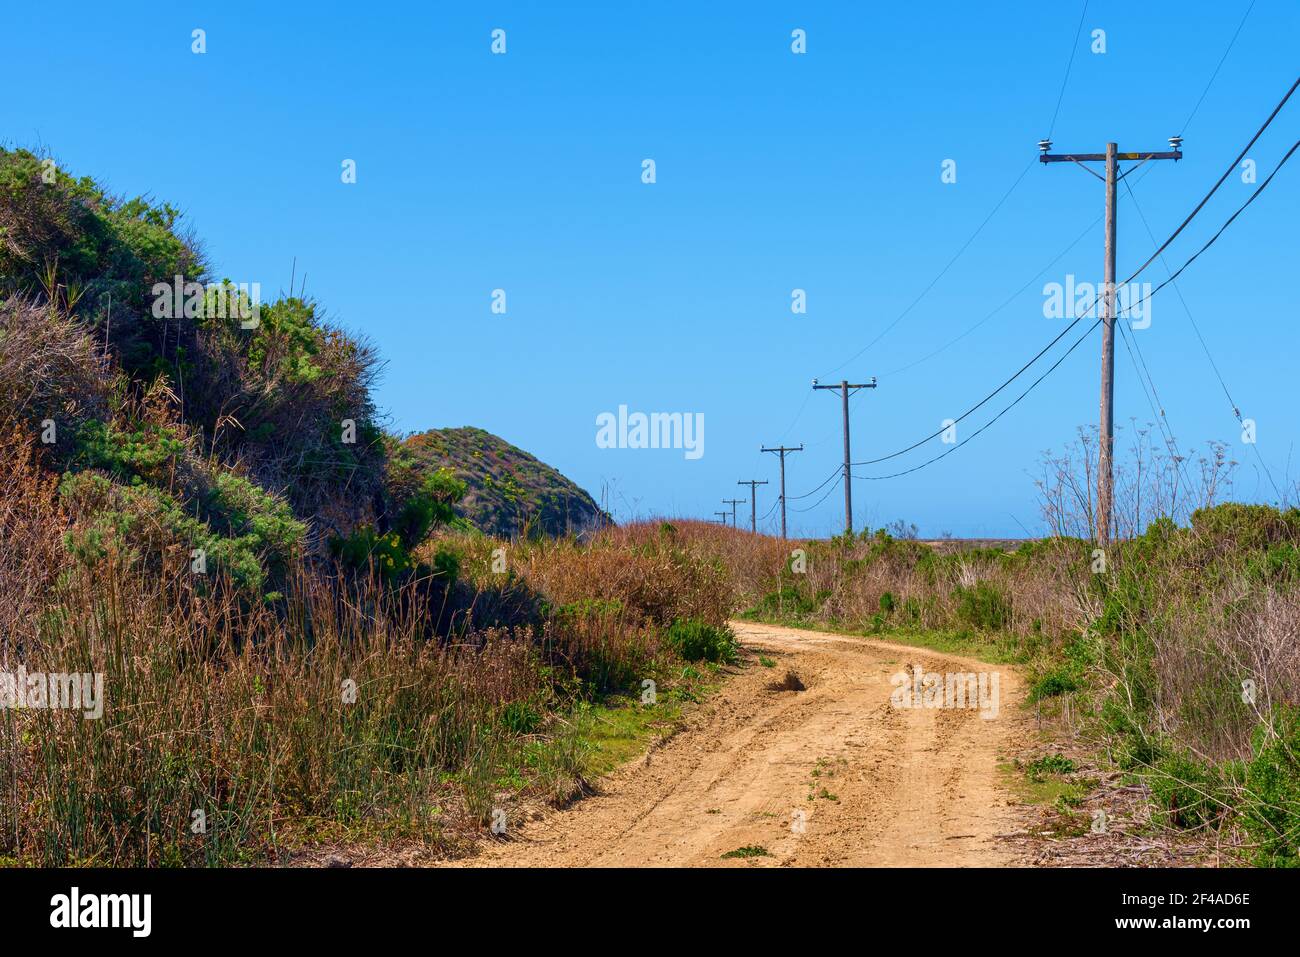 La strada sterrata ricurca le colline con i pali del telefono sotto il blu cieli Foto Stock